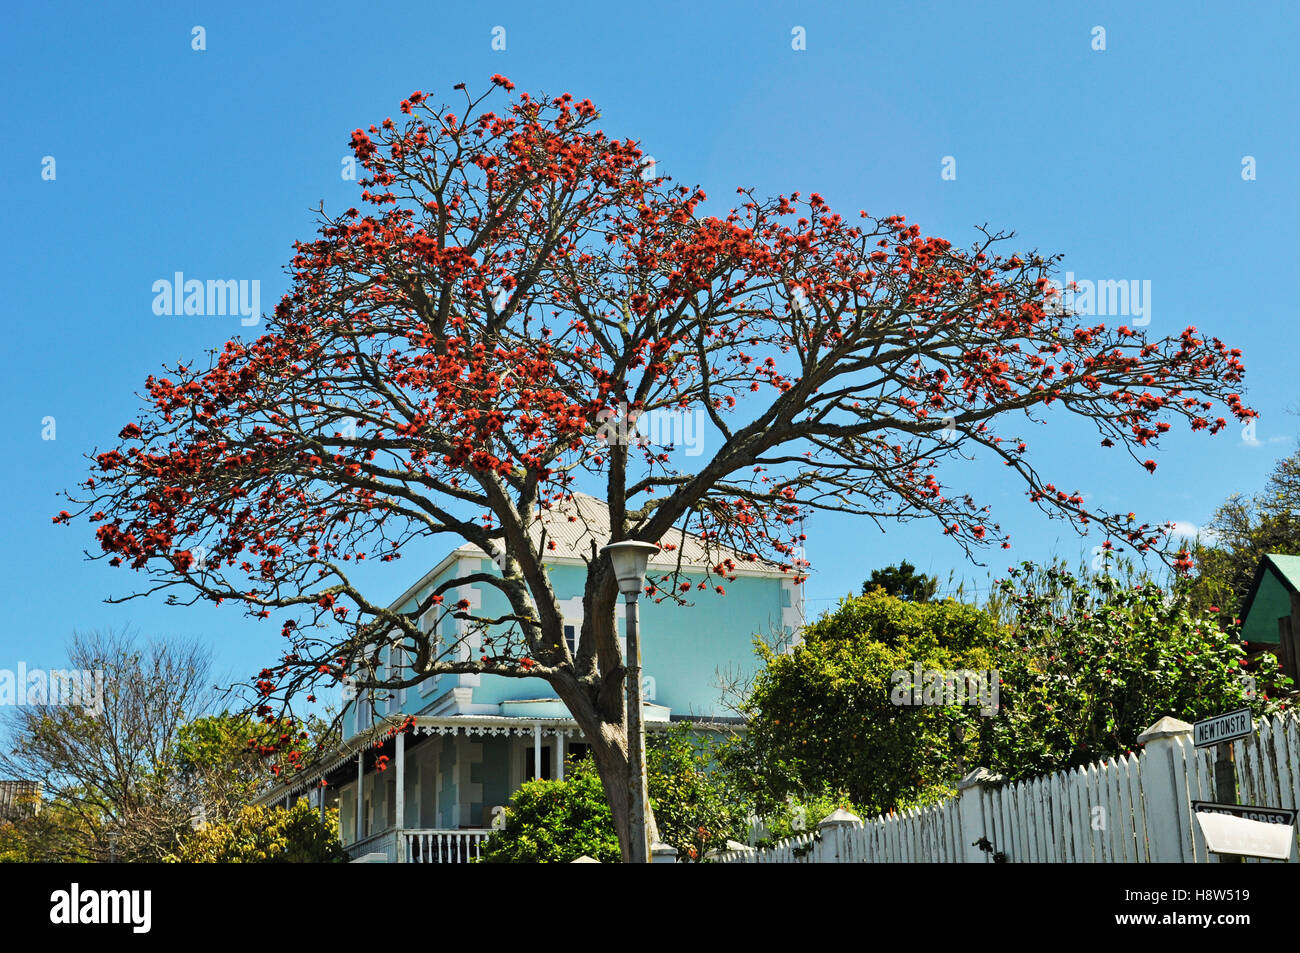 Afrique du Sud : un arbre flamboyant à Plettenberg Bay, à l'origine appelé Bahia Formosa, une ville de l'Afrique du Sud Garden Route Banque D'Images